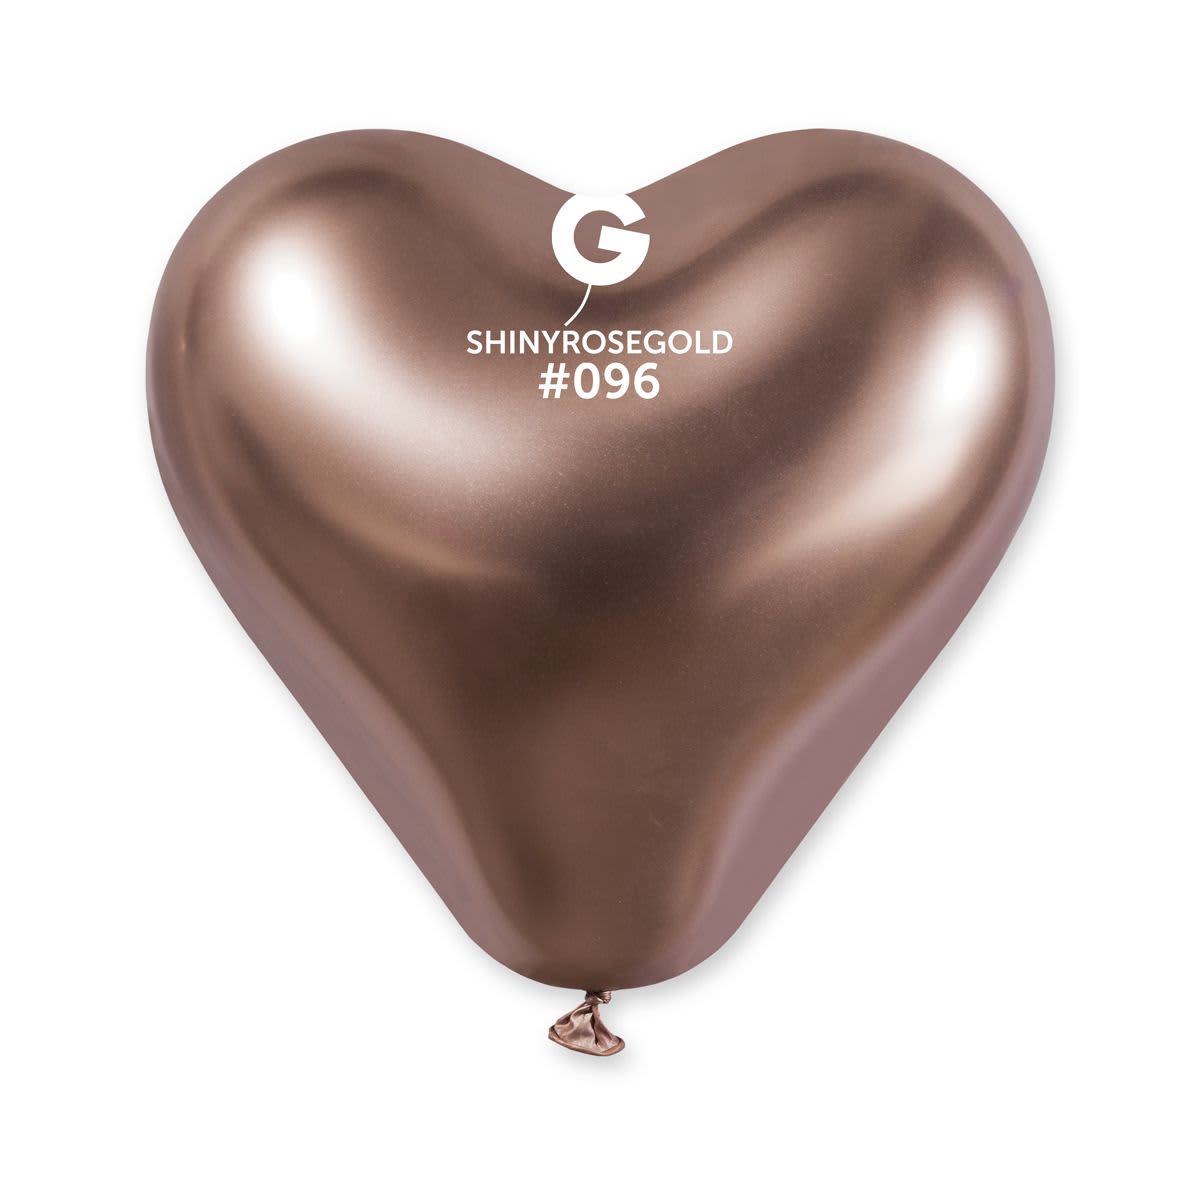 G-12” Shiny rose gold #096